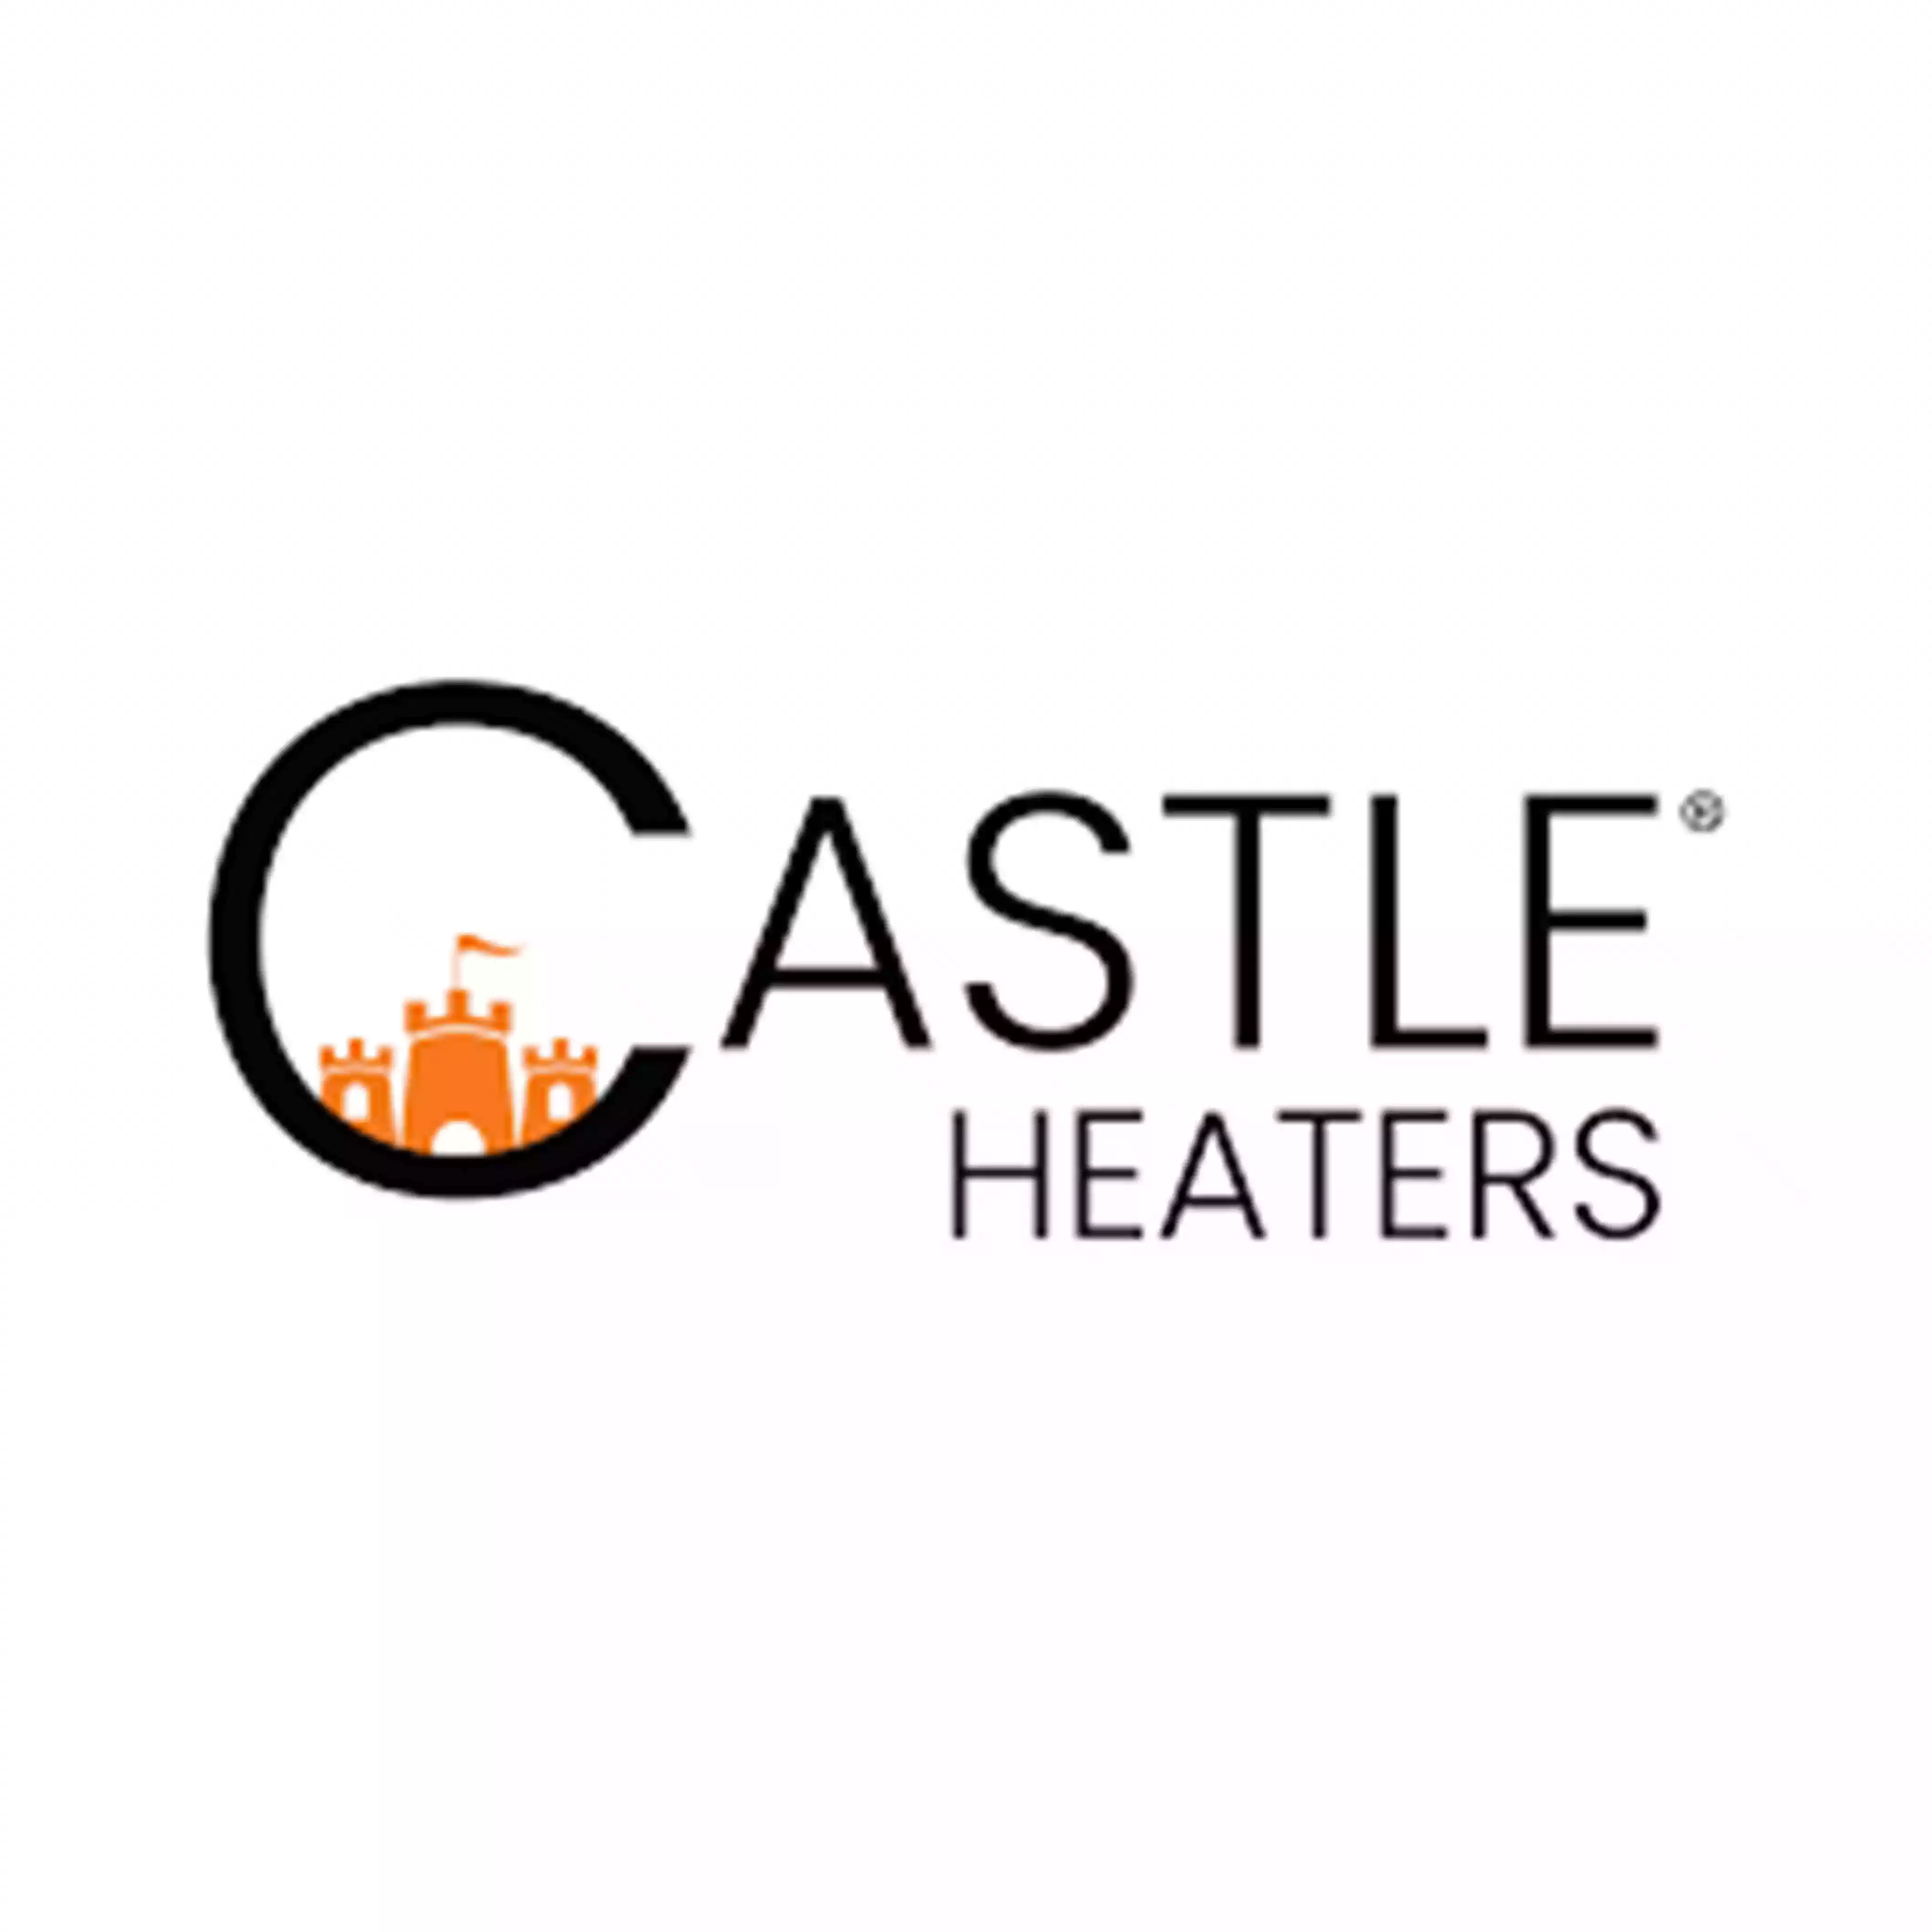 Castle Heaters logo